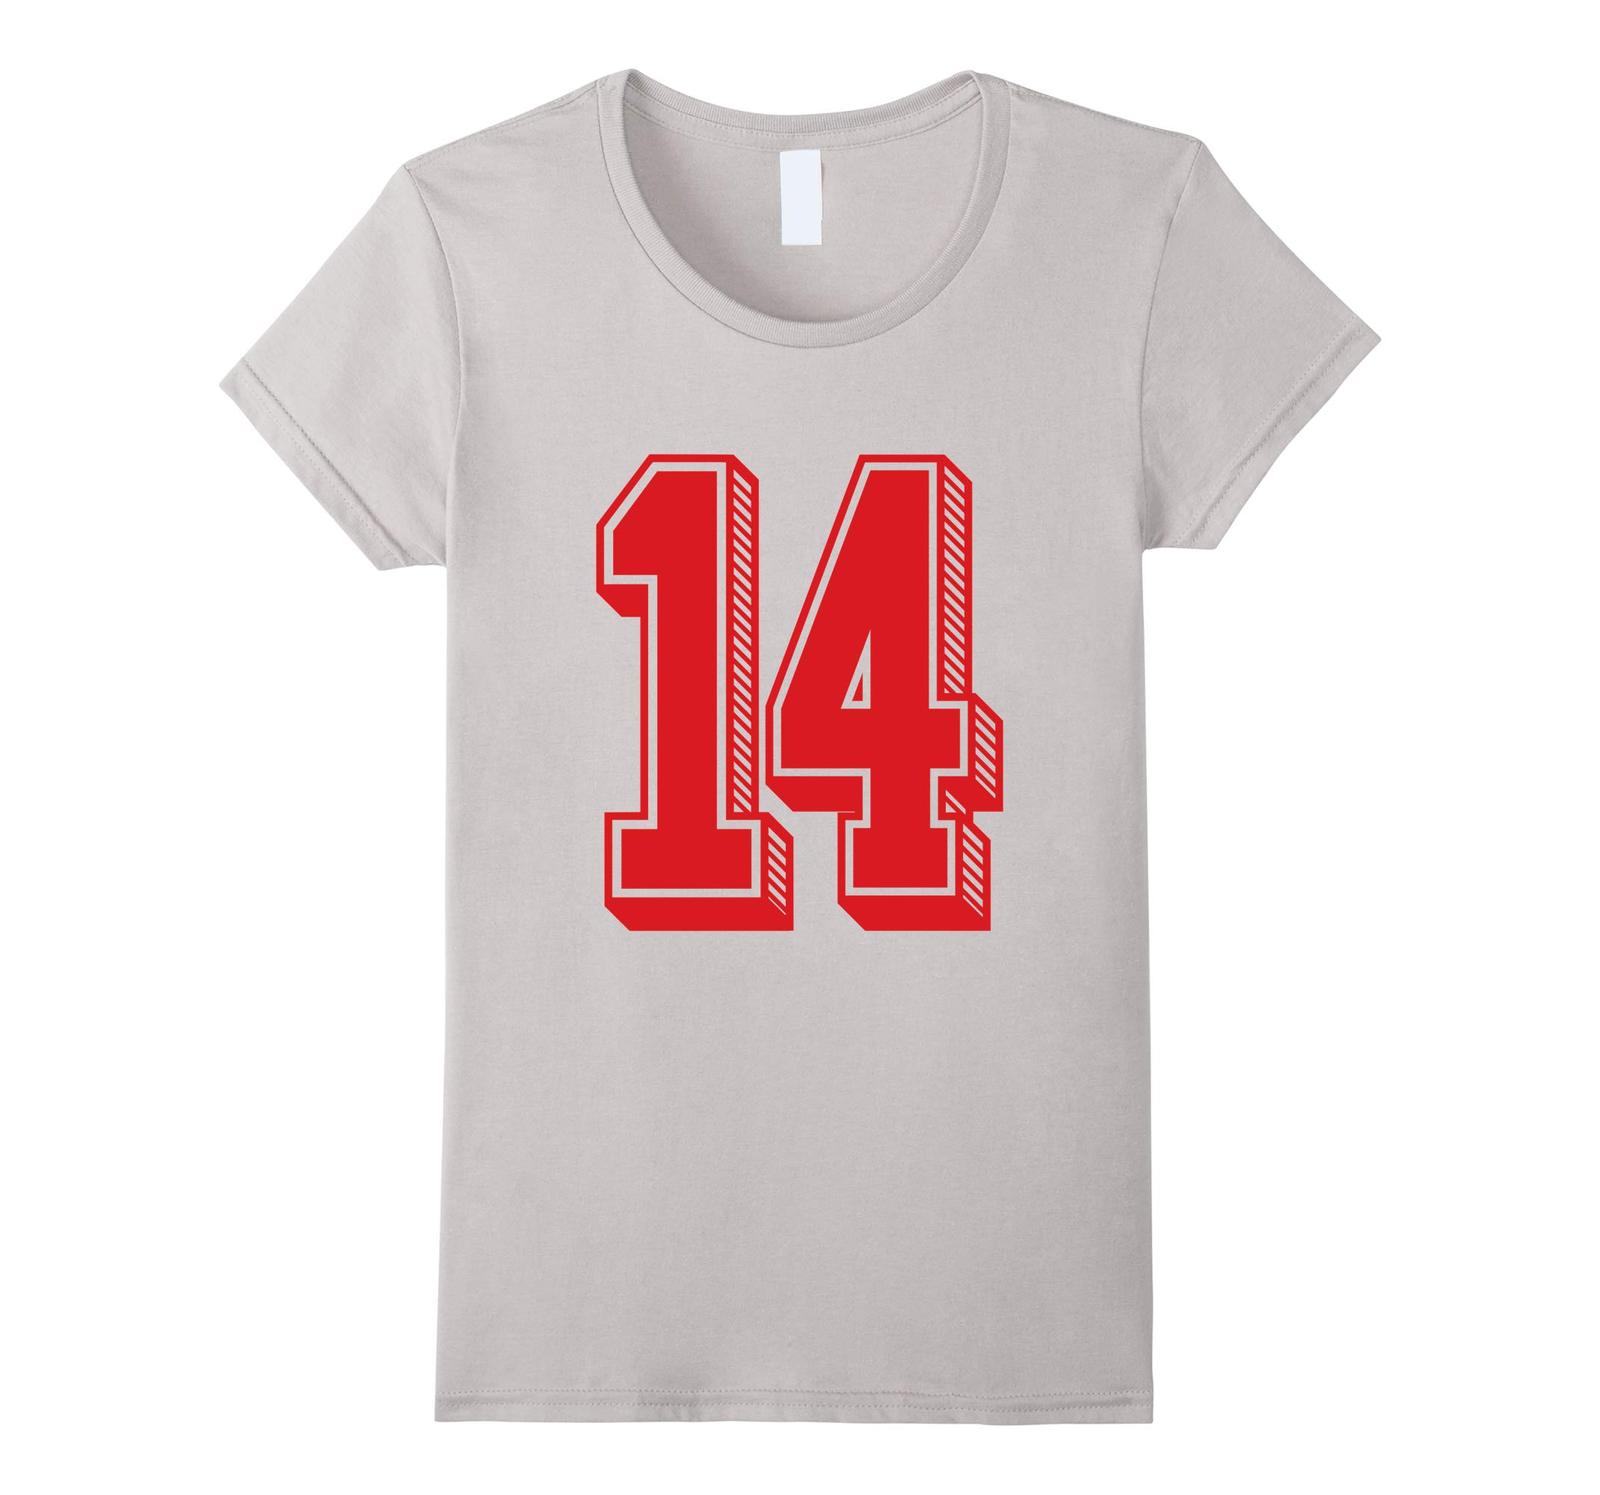 New Tee - #14 Red Shadow Number 14 Sports Fan Jersey Style T-Tee Wowen ...